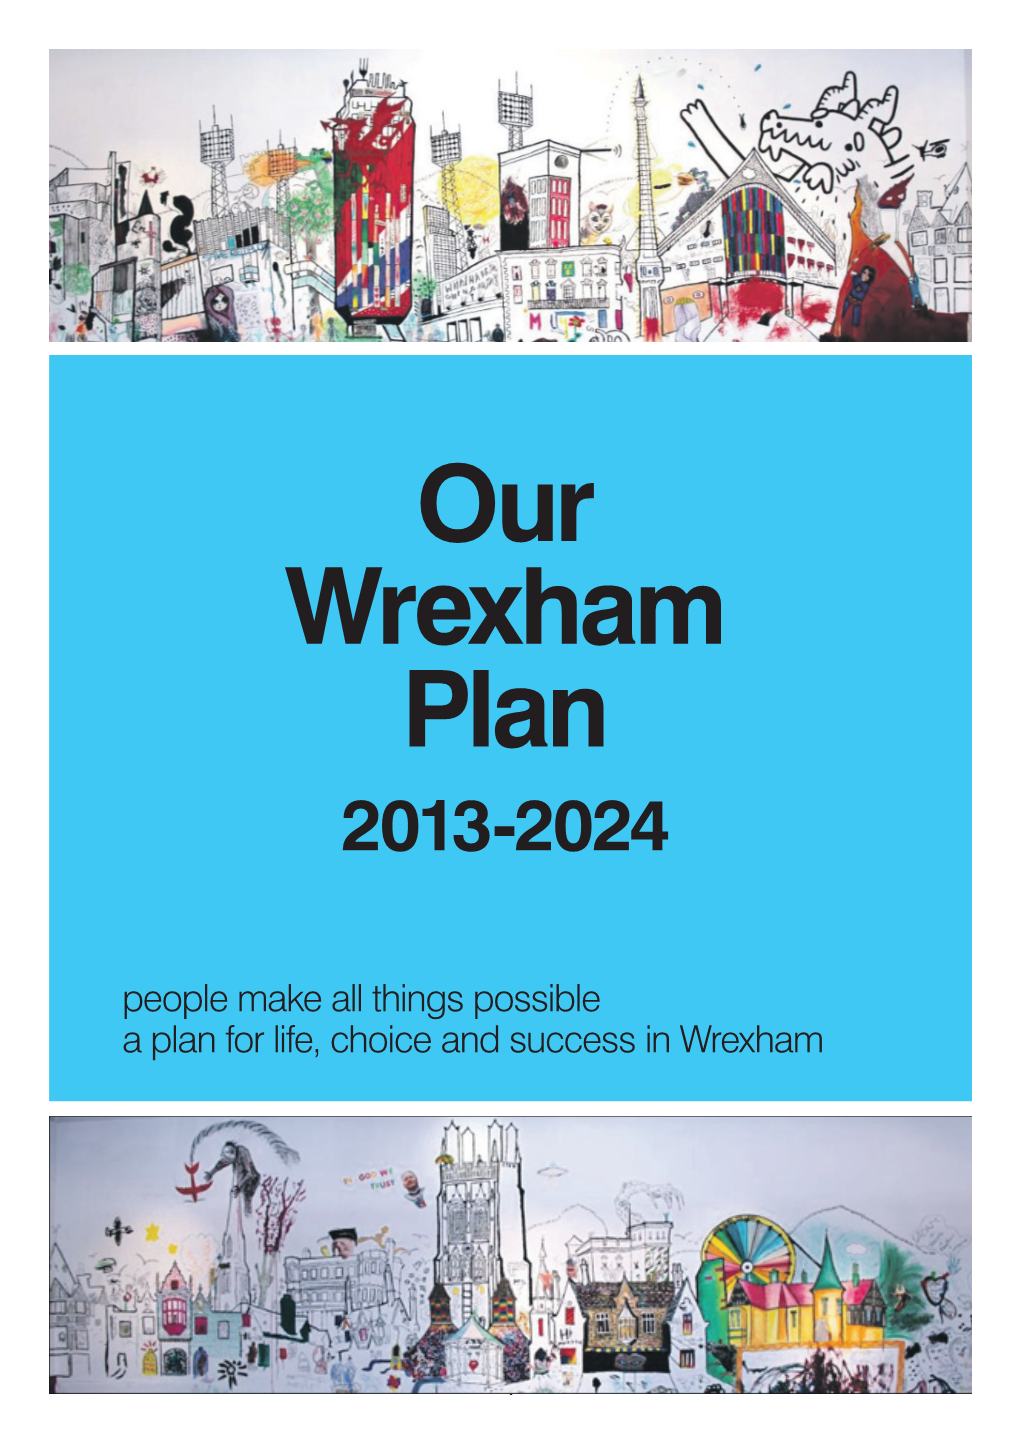 Our Wrexham Plan 2013-2024